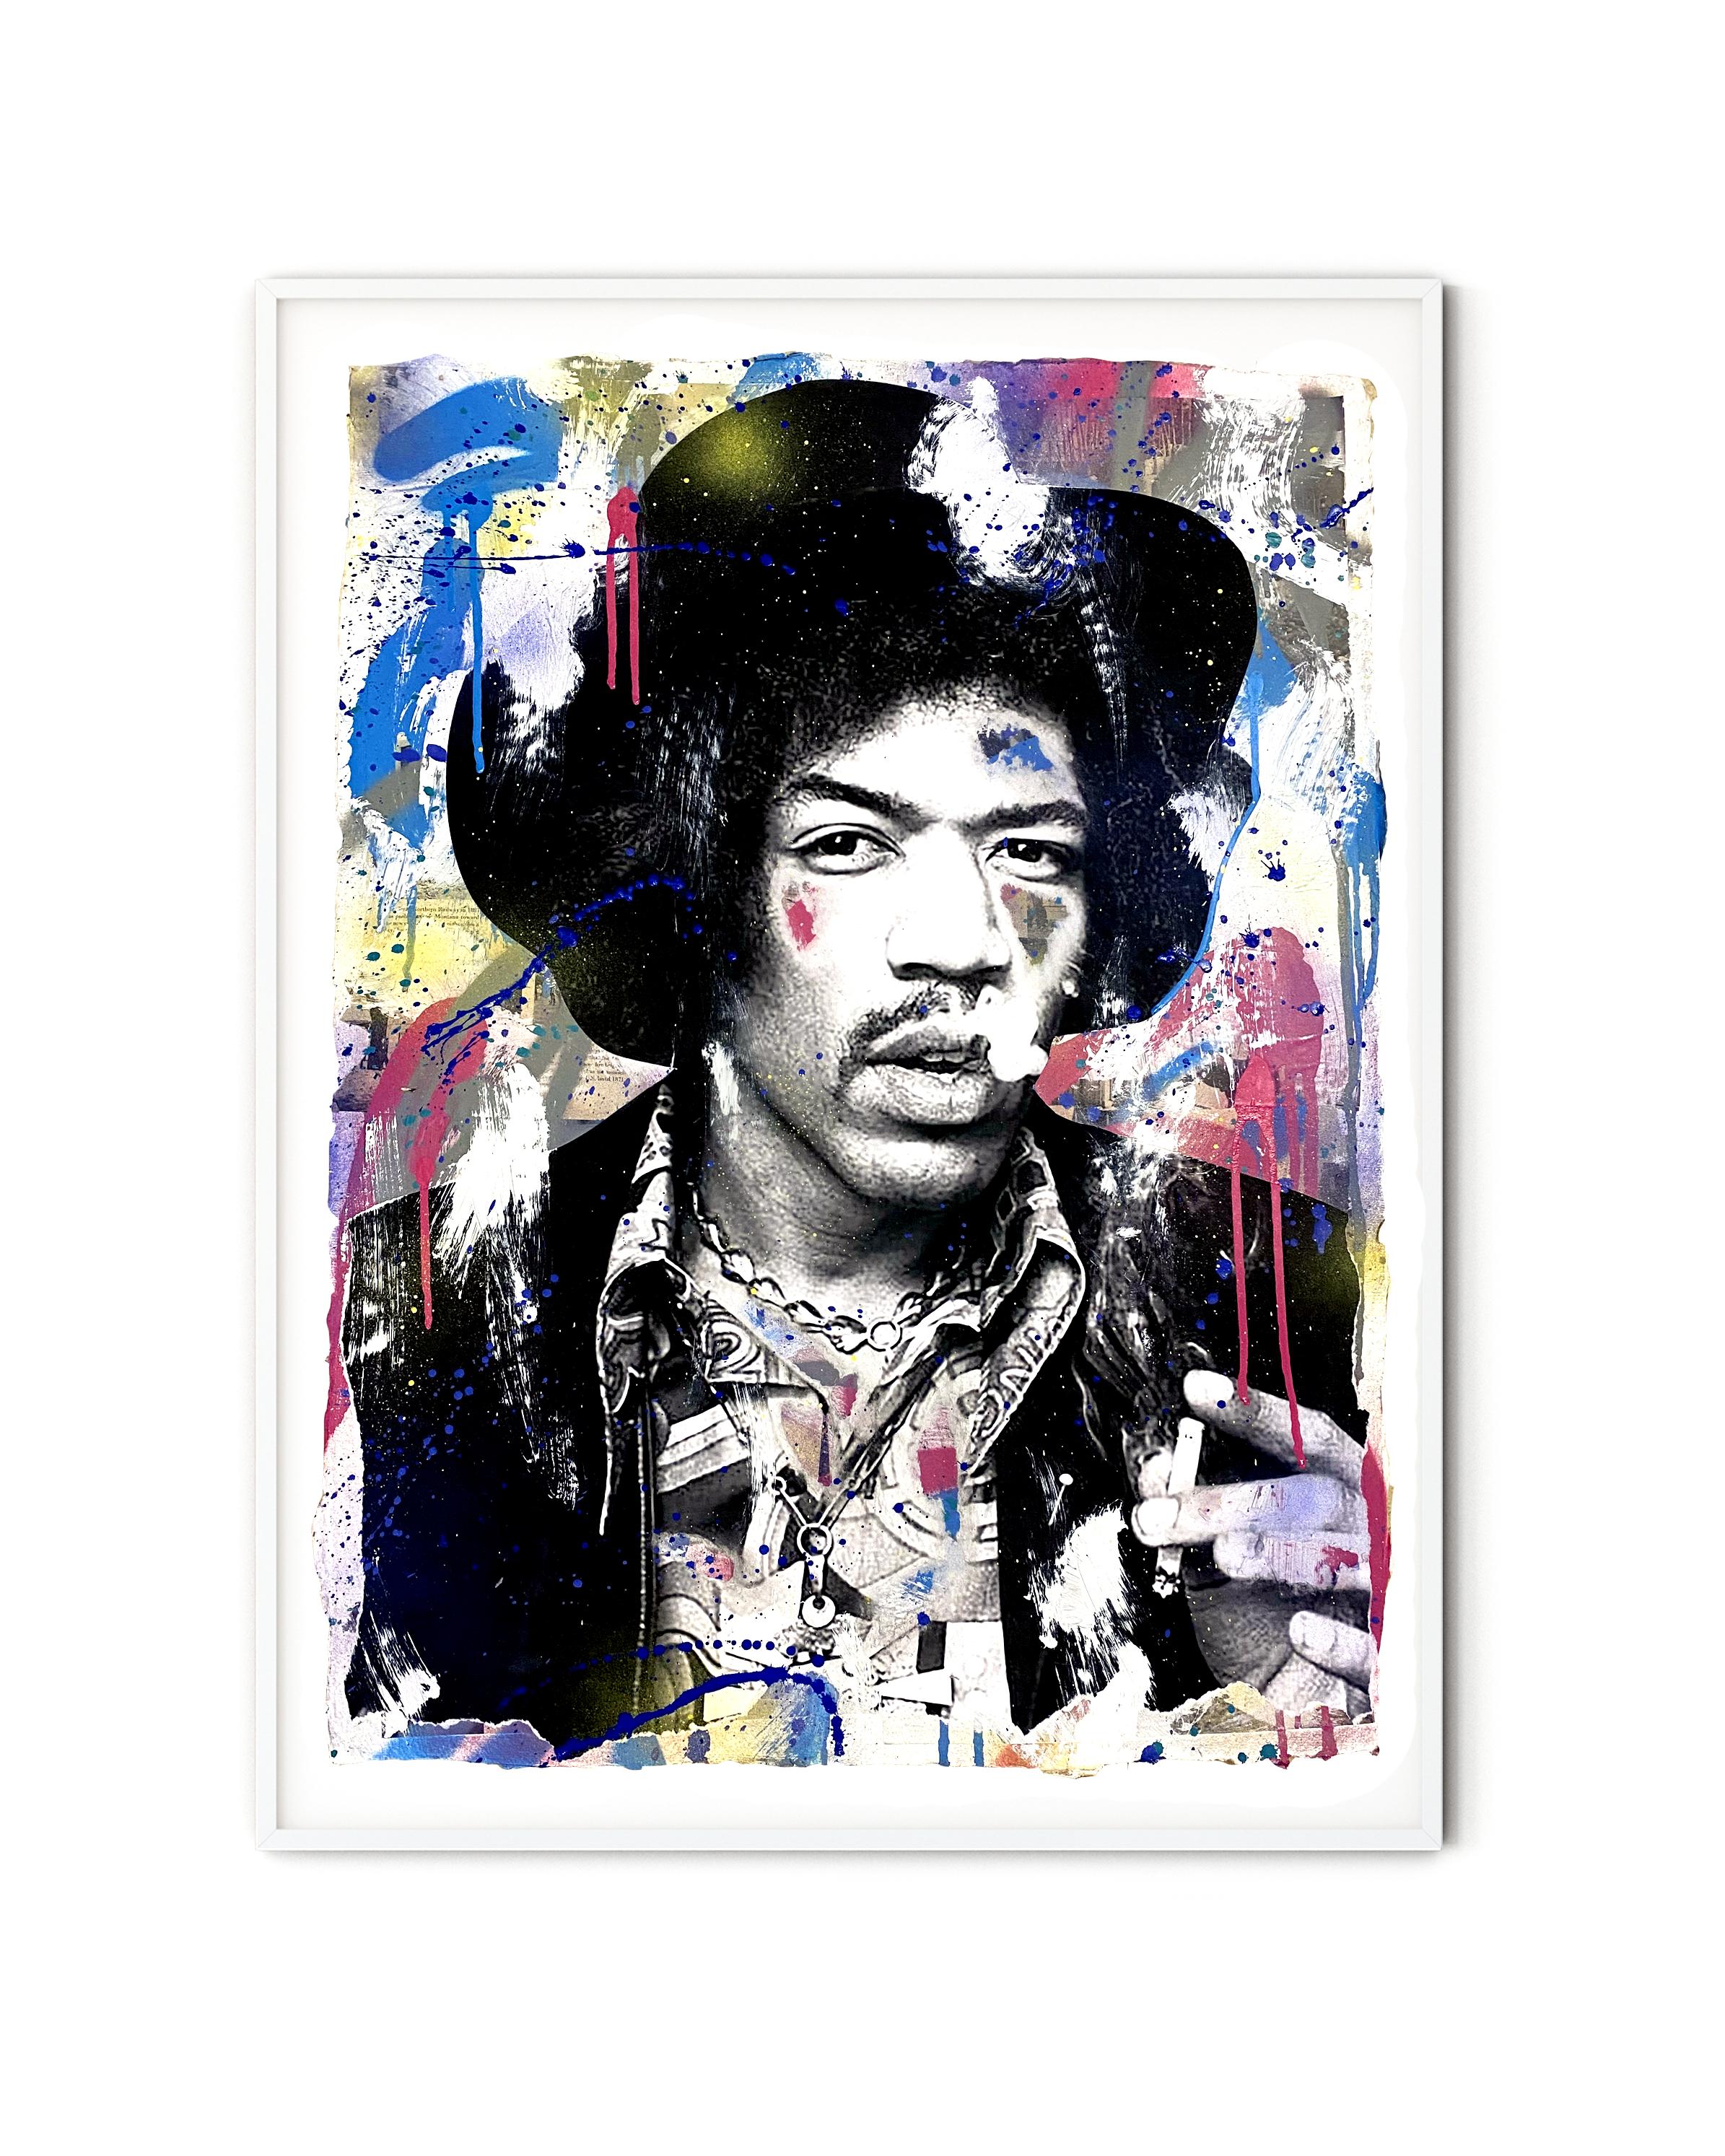 Jimi Hendrix - Mixed Media Art by Seek One